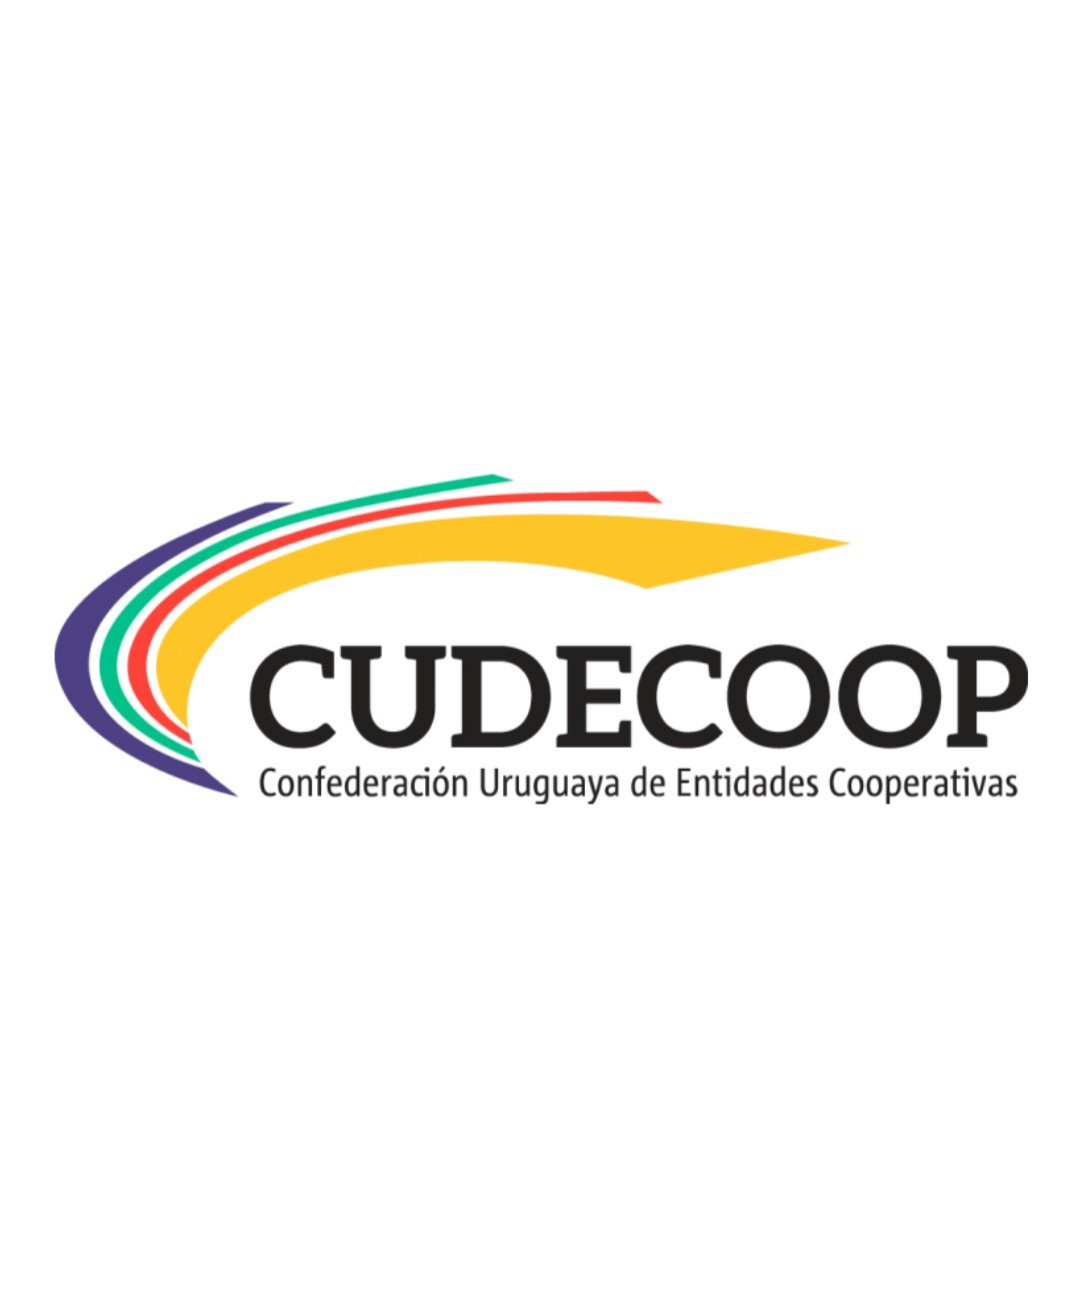 CUDECOOP - Confederación Uruguaya de Entidades Cooperativas